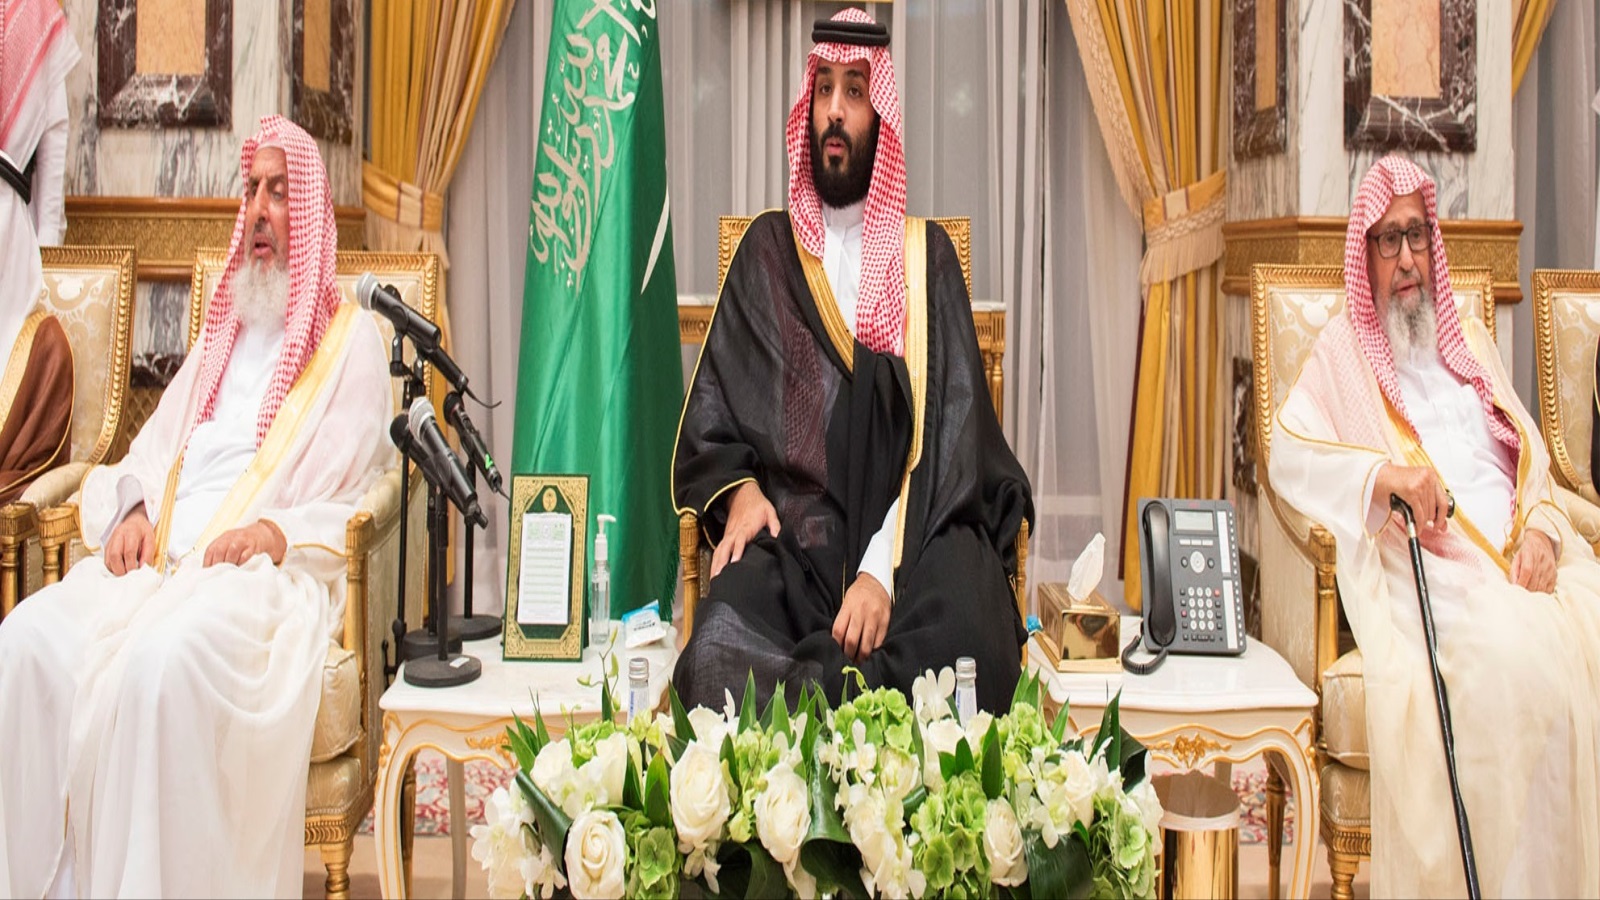 القومية السعودية التي يجري تخليقها بدلاً من العامل الديني، واختصارها بالتدريج في حكم الملك سلمان وابنه، غطاء كثيف لحكم الرجل الفرد. وإزاحة الدين من المجال العام وإعادة تعريف دوره